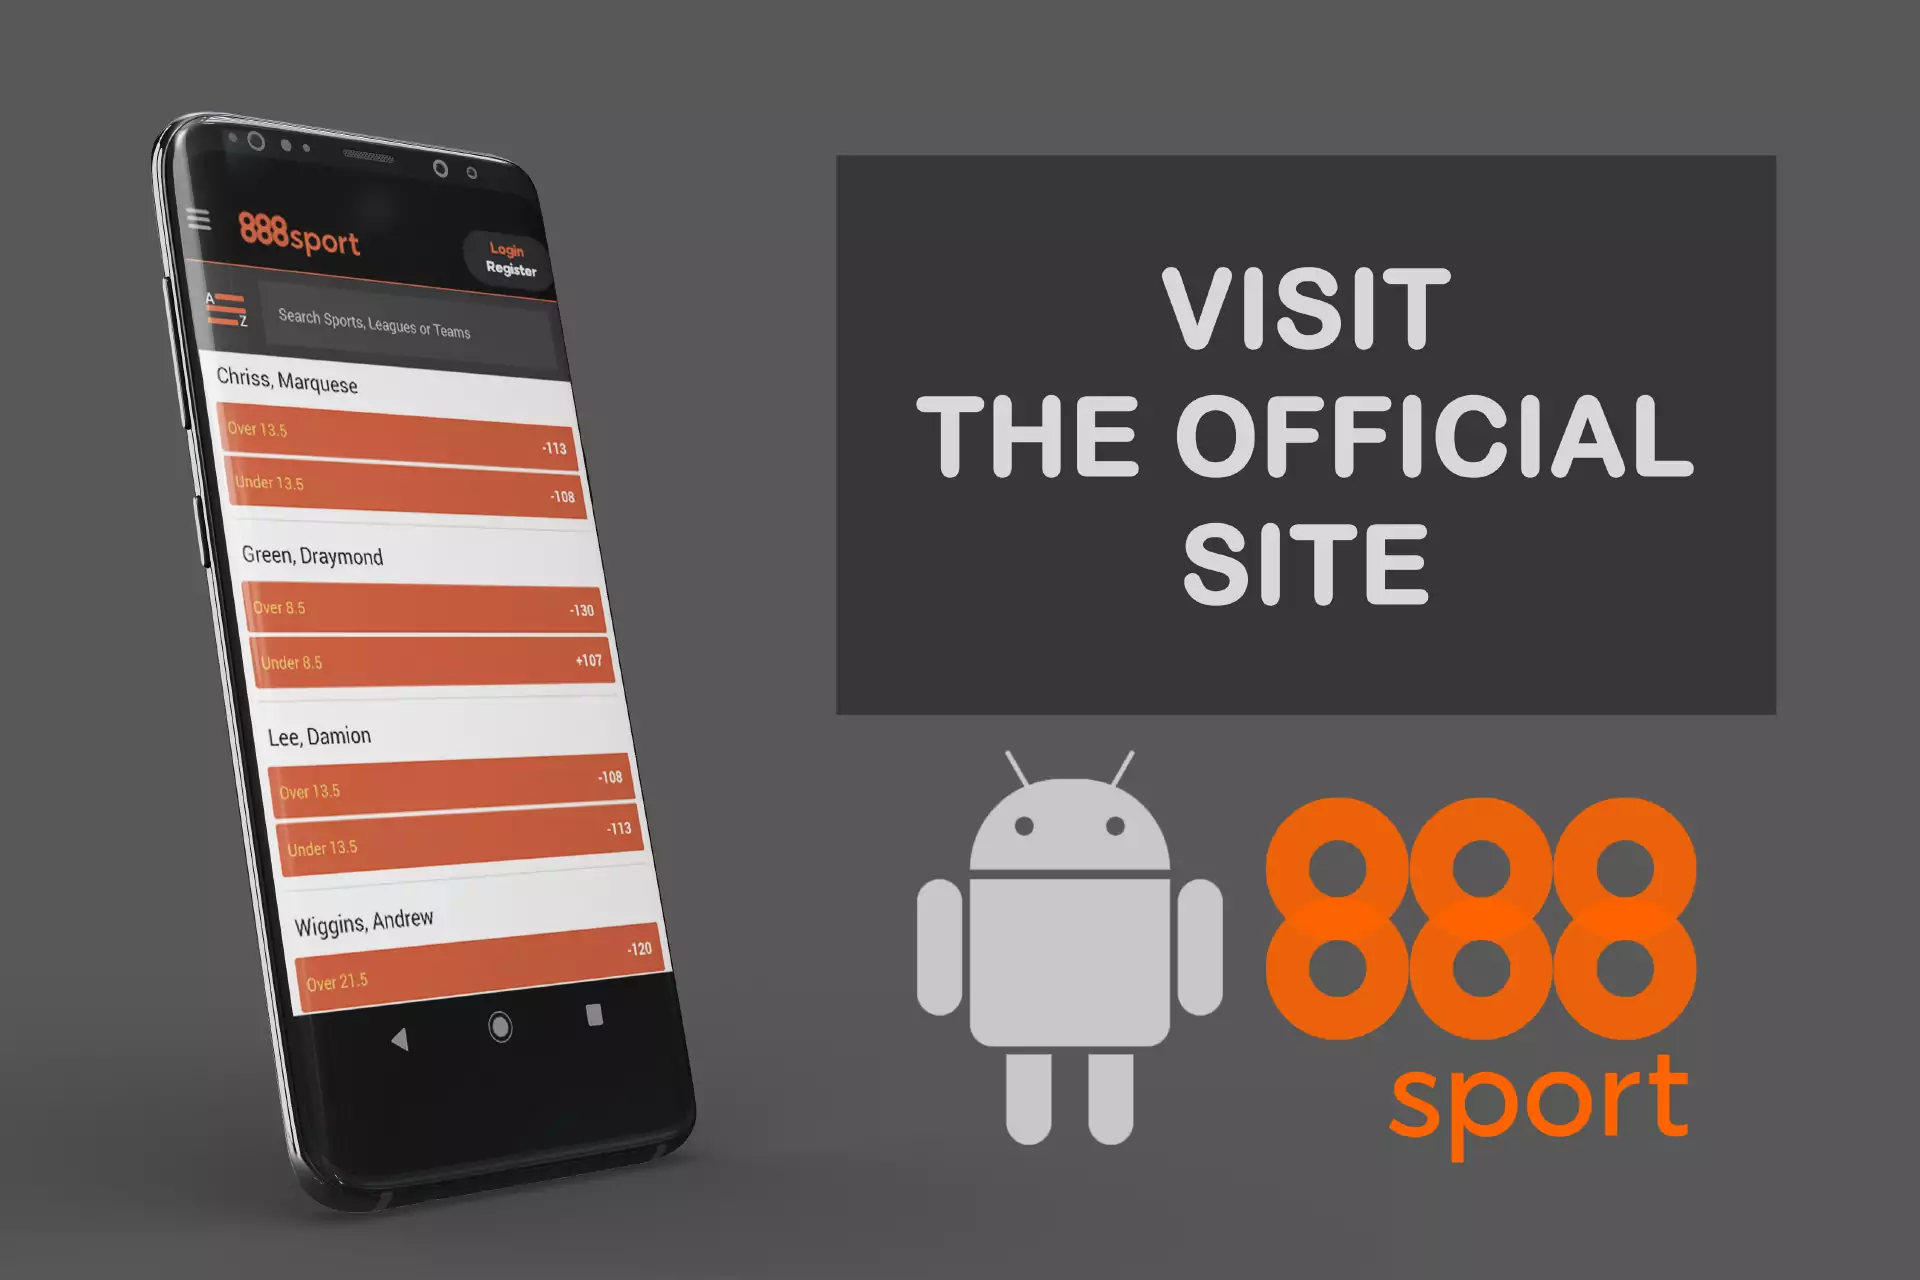 Visit the 888sport website via mobile browser.